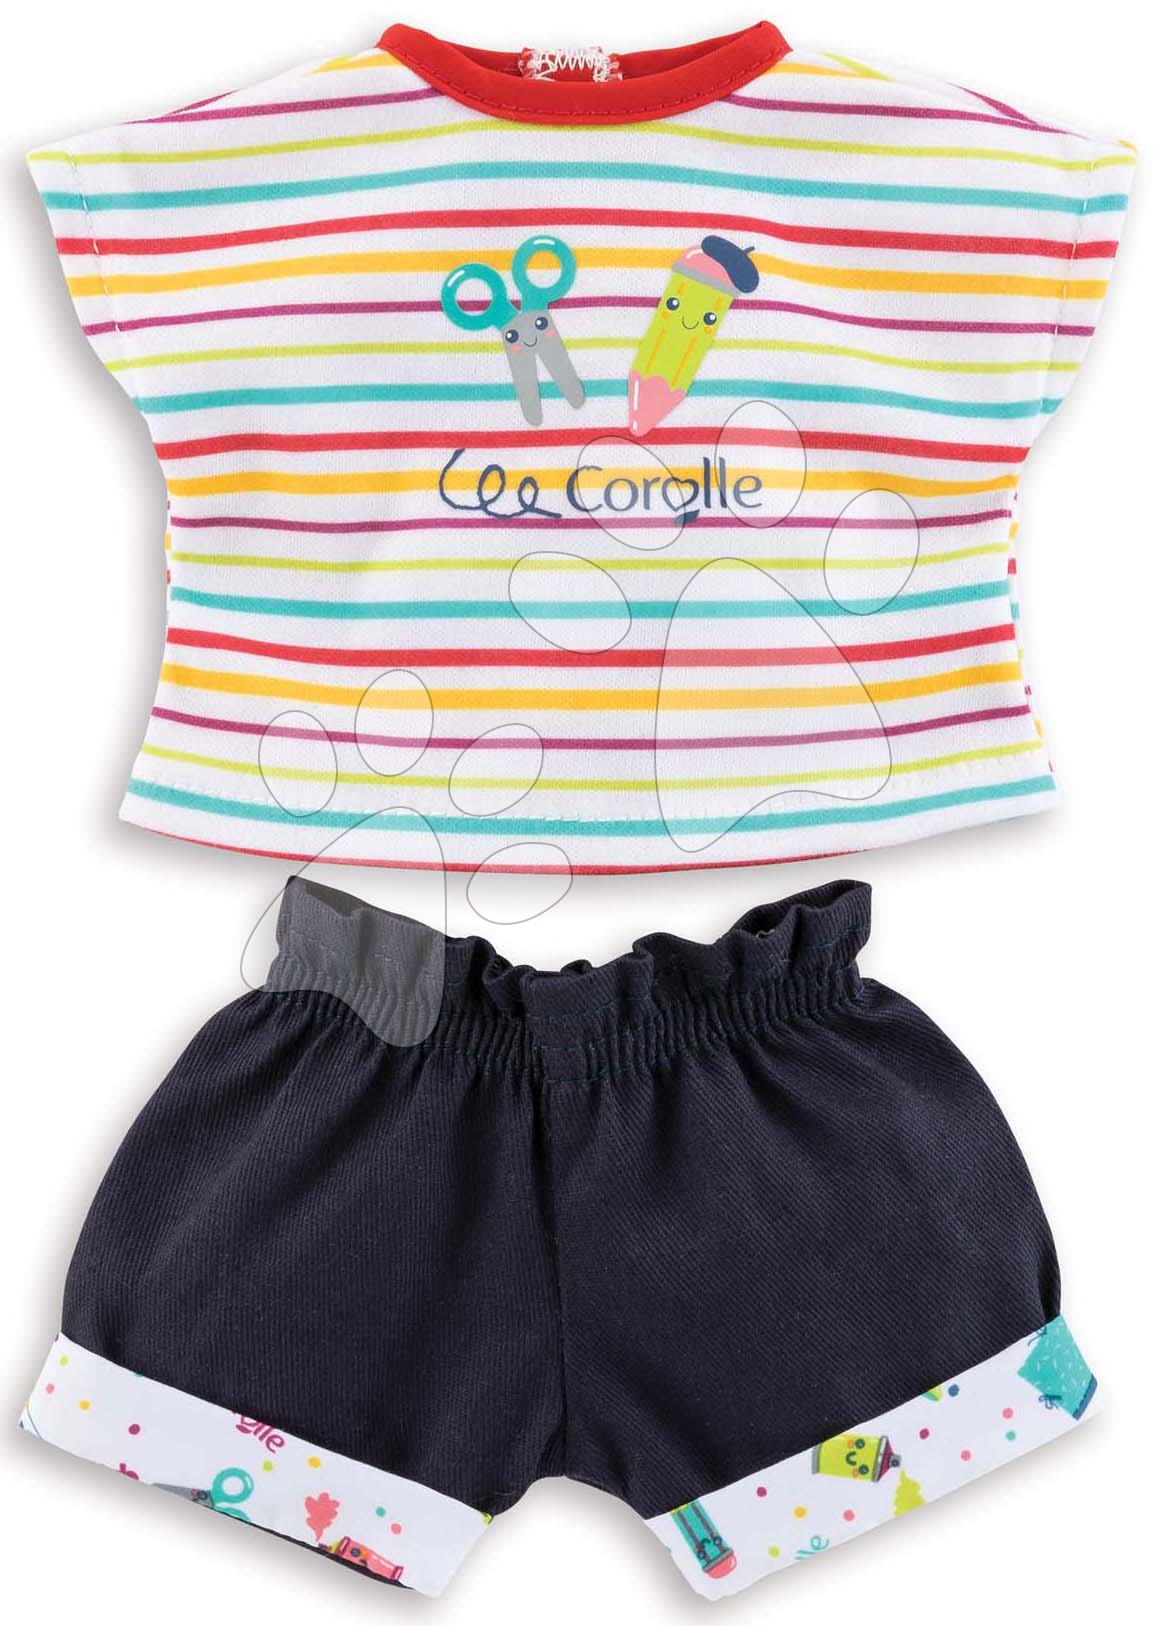 Oblečenie T-shirt & Shorts Little Artist Ma Corolle pre 36 cm bábiku od 4 rokov